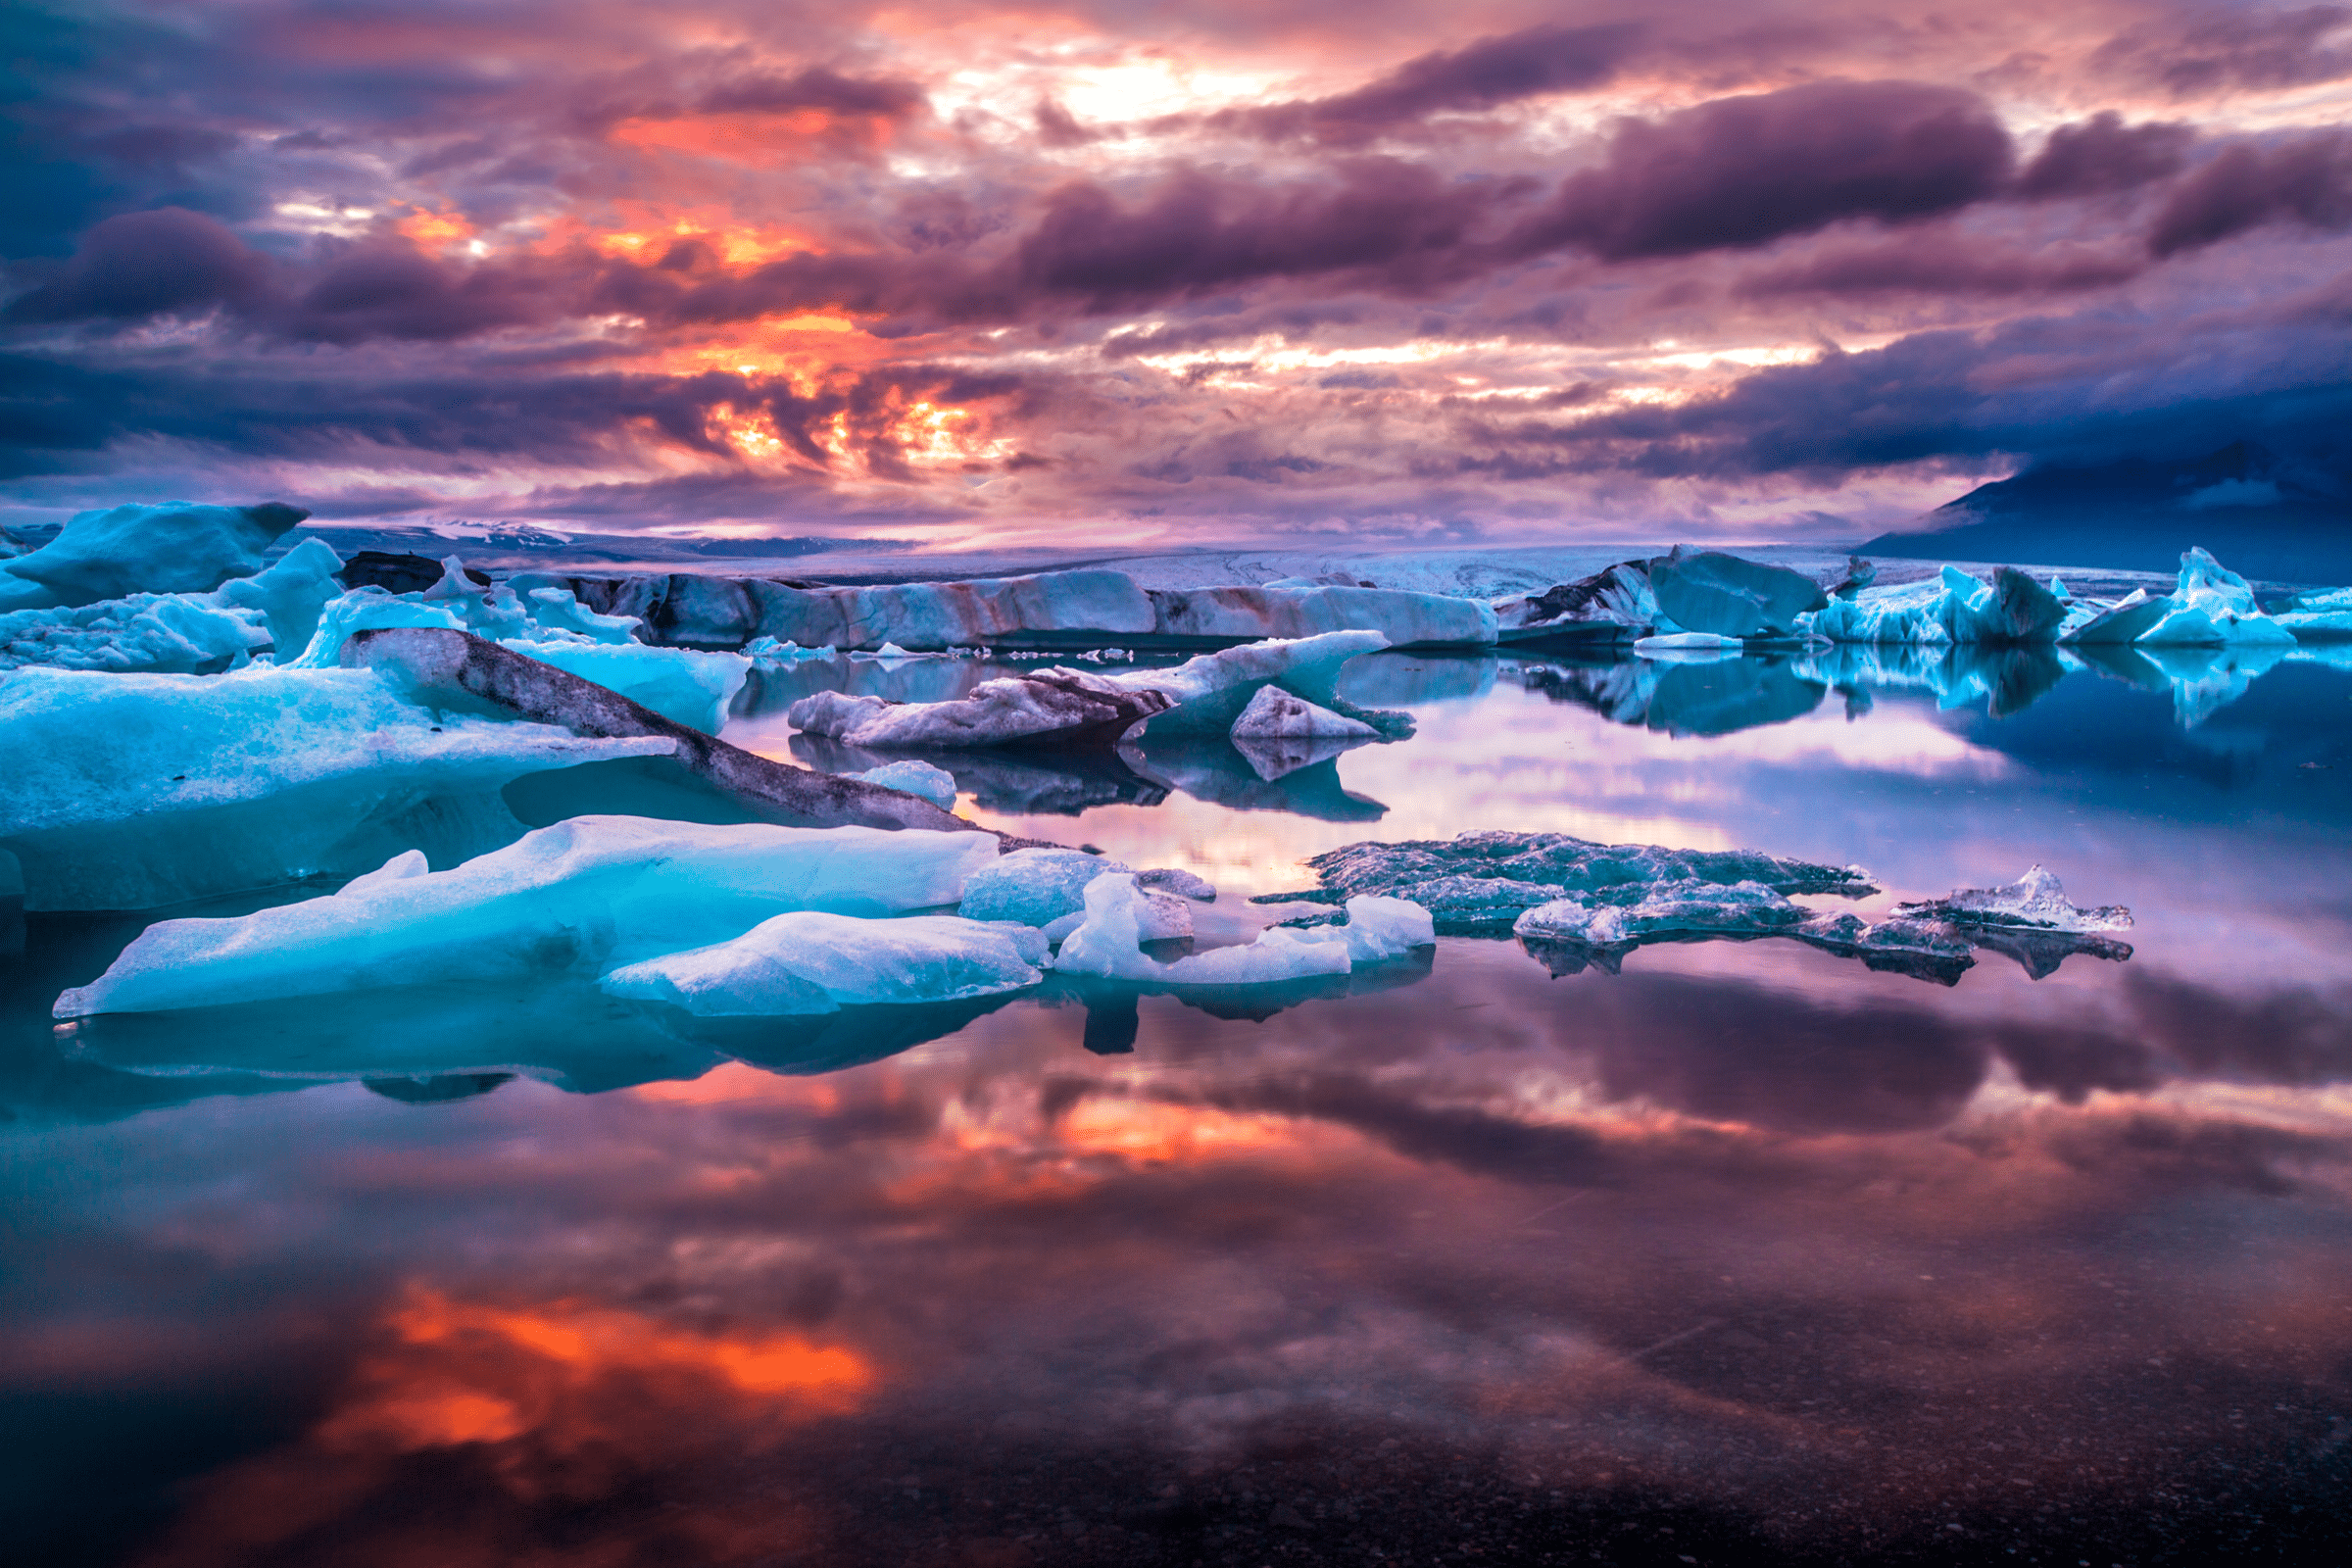 Cielos rosados reflejados en una tranquila laguna llena de icebergs blancos y azules, en la laguna glaciar Jökulsárlón en Islandia